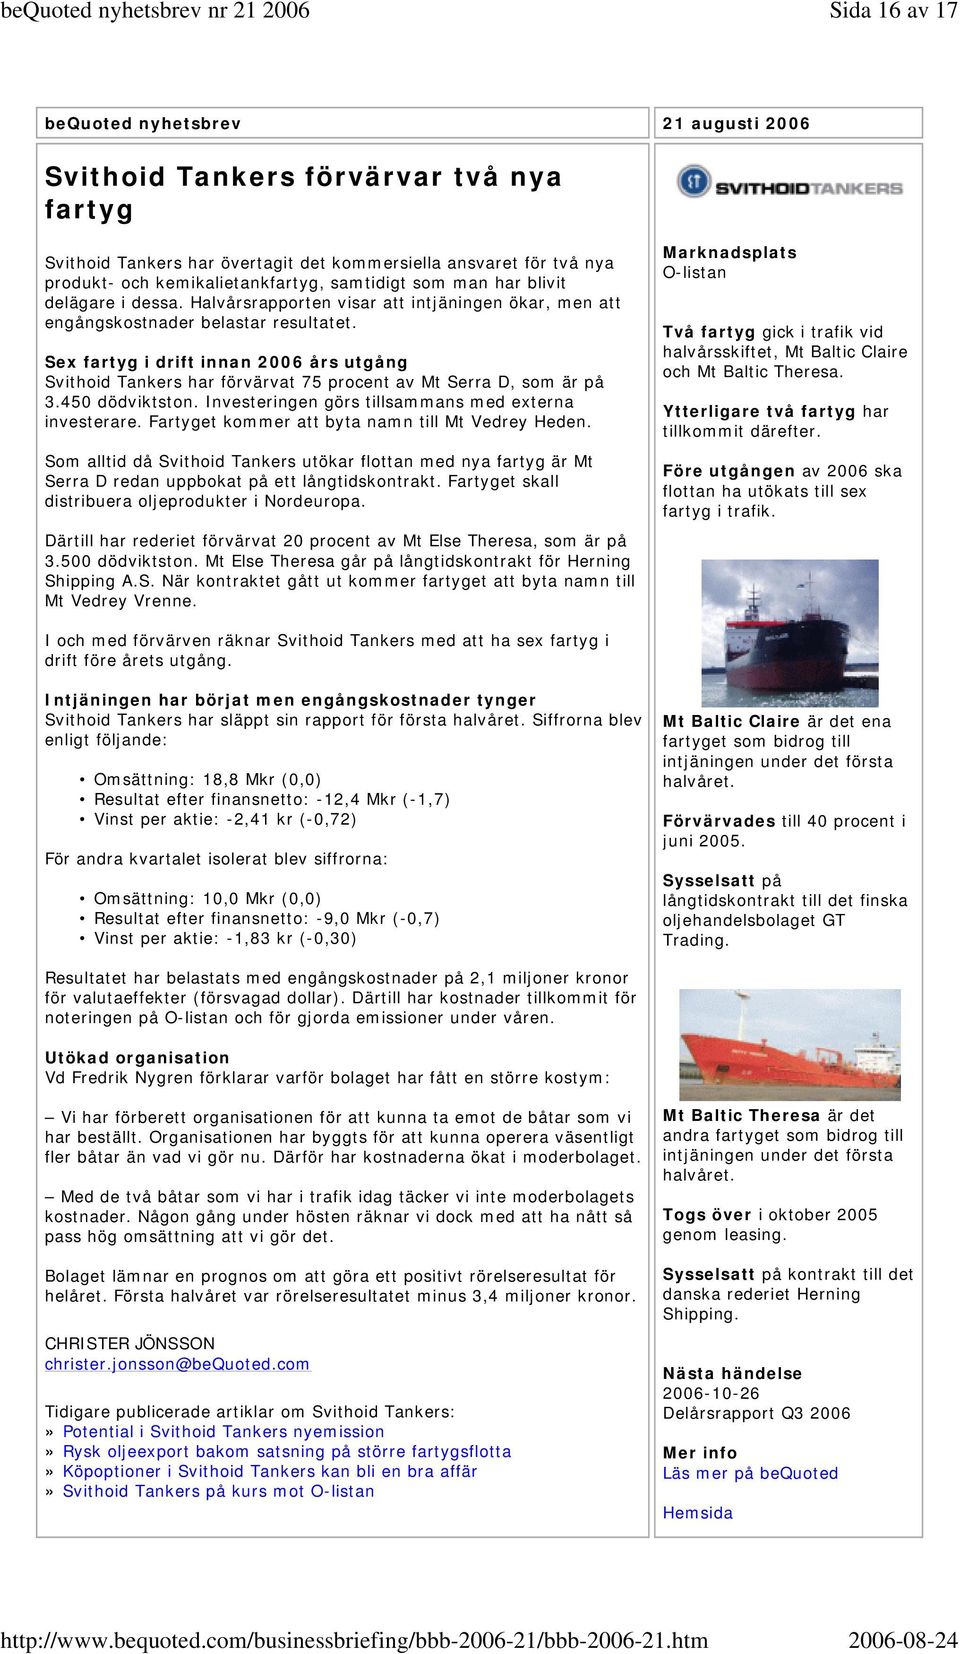 Sex fartyg i drift innan 2006 års utgång Svithoid Tankers har förvärvat 75 procent av Mt Serra D, som är på 3.450 dödviktston. Investeringen görs tillsammans med externa investerare.